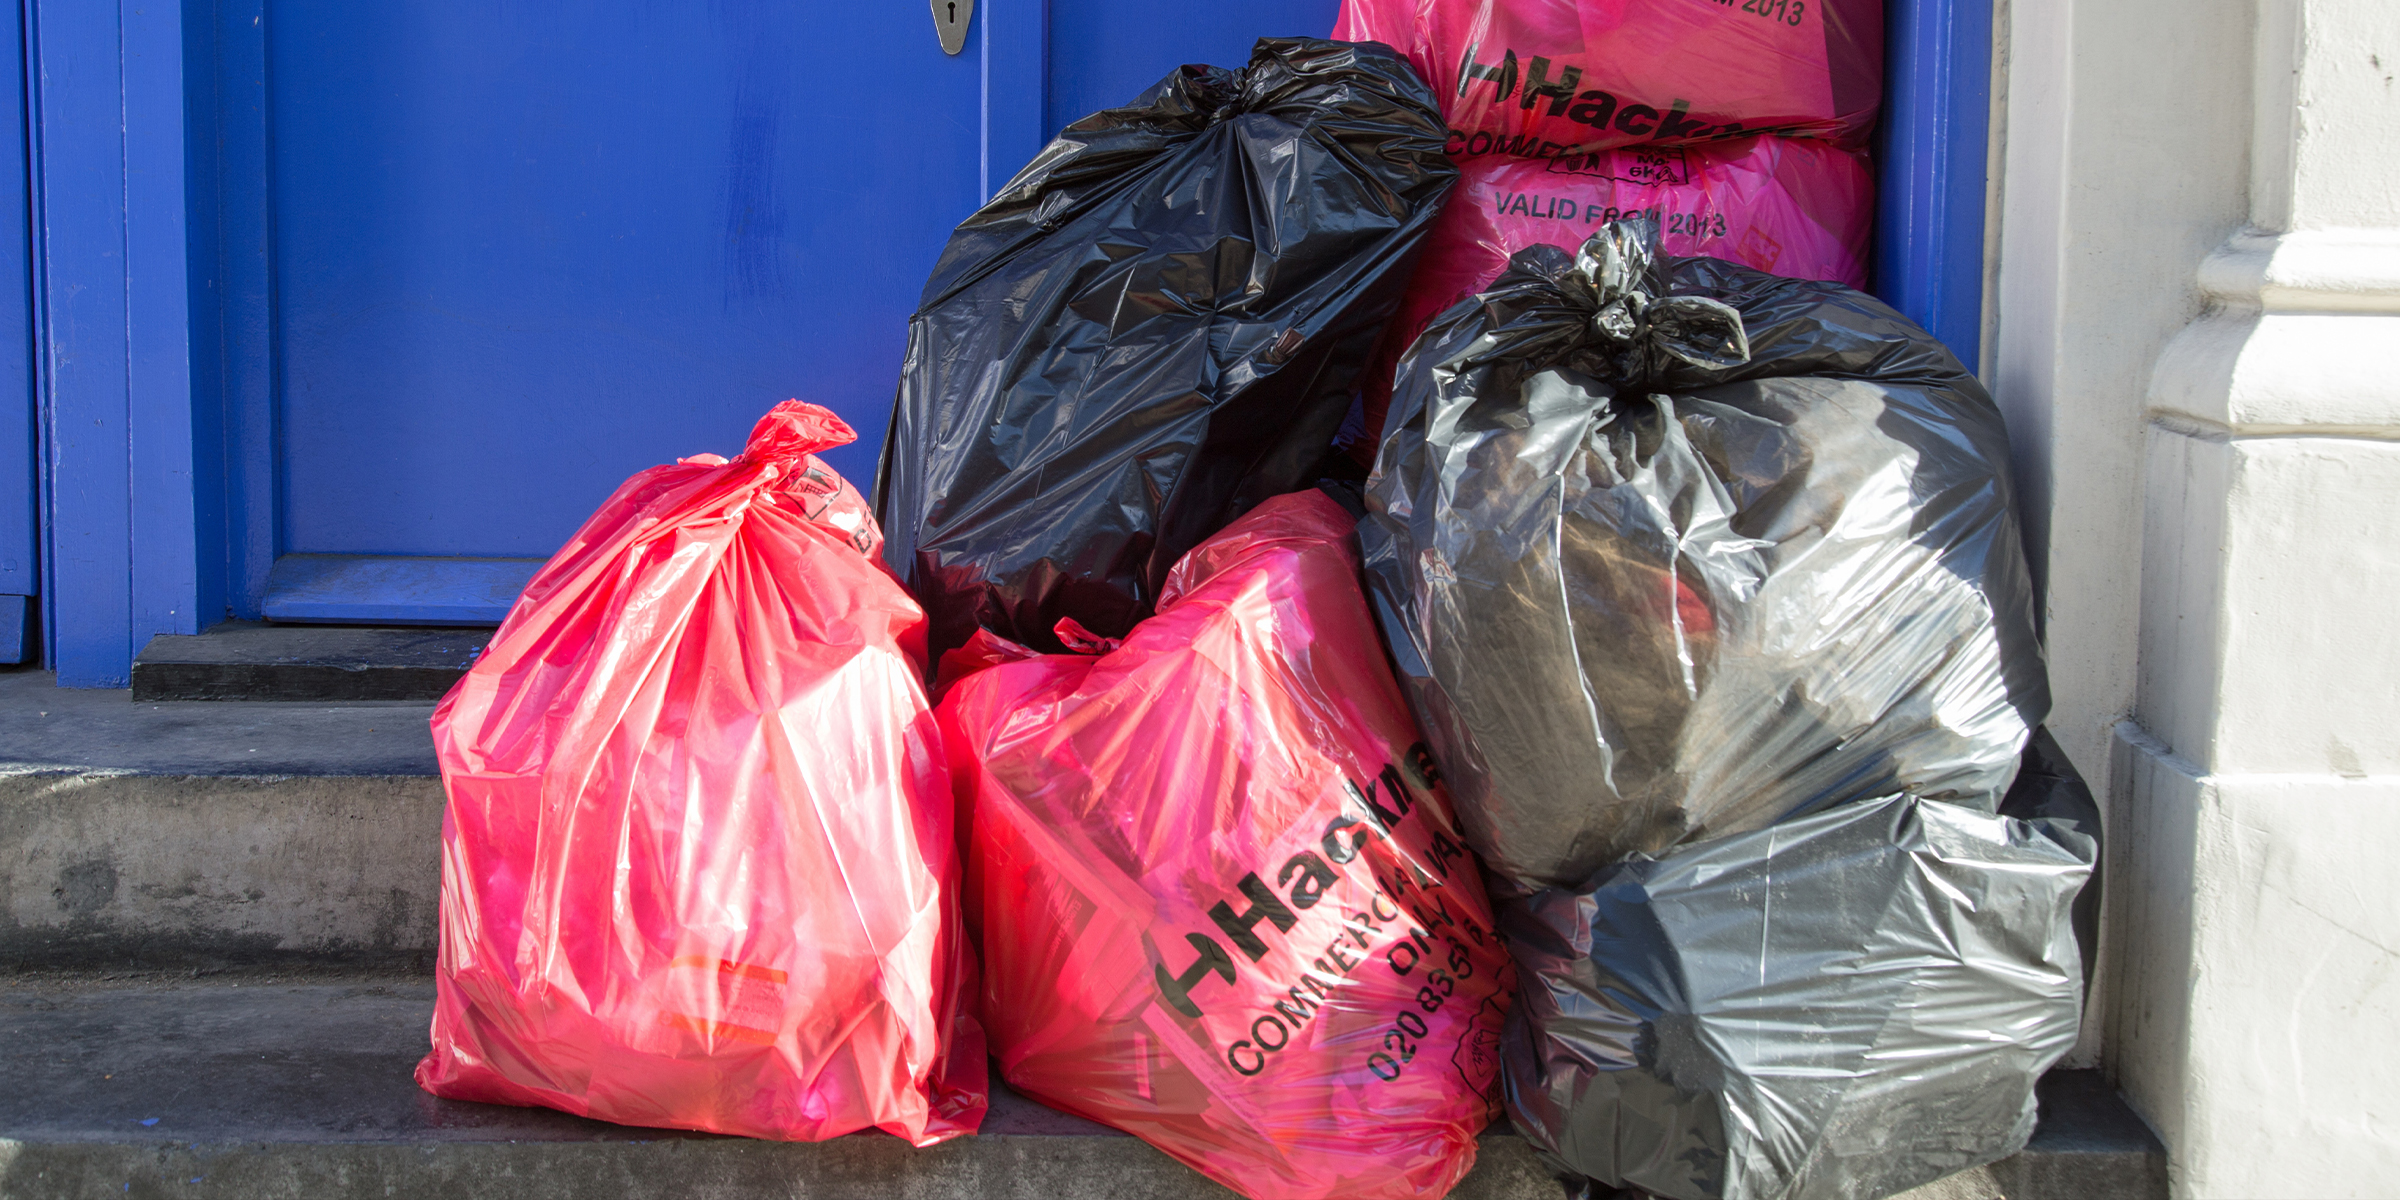 Sacs à ordures près de la porte. | Source : Shutterstock